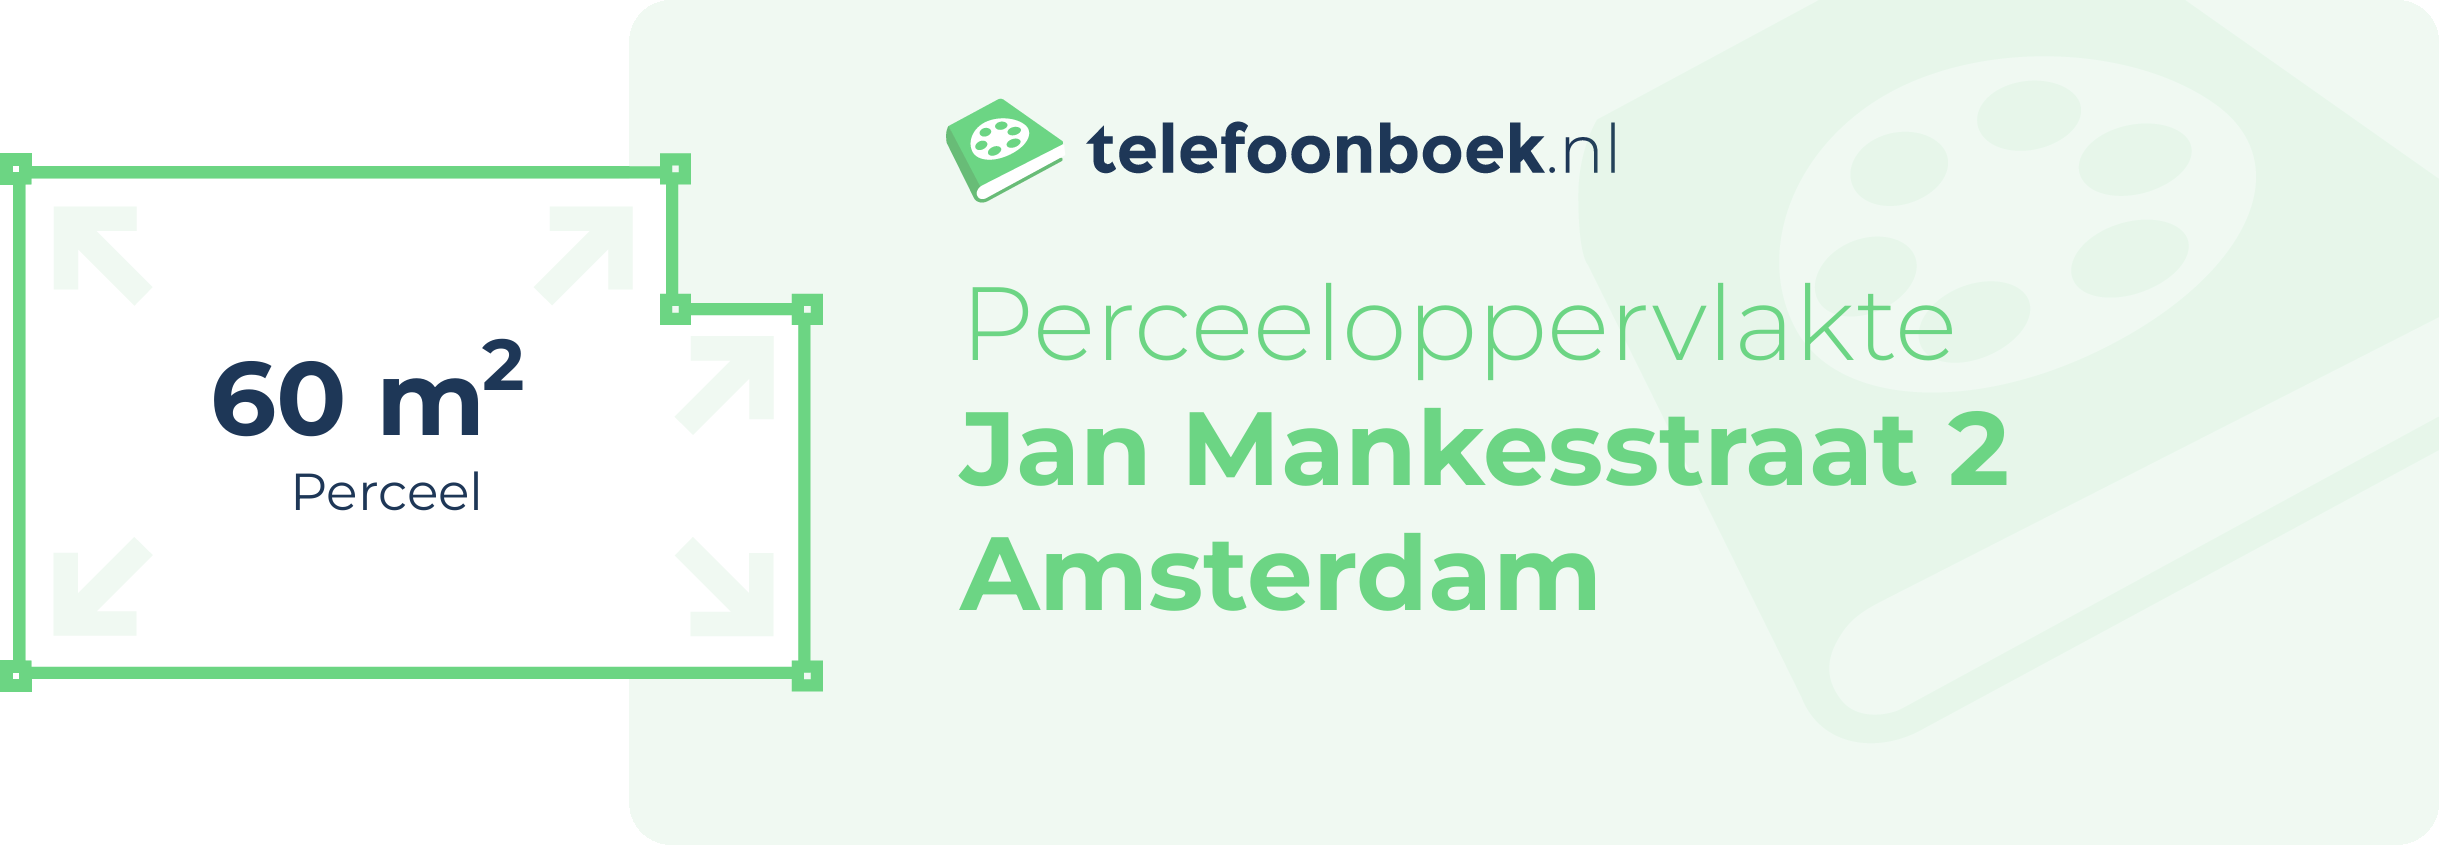 Perceeloppervlakte Jan Mankesstraat 2 Amsterdam